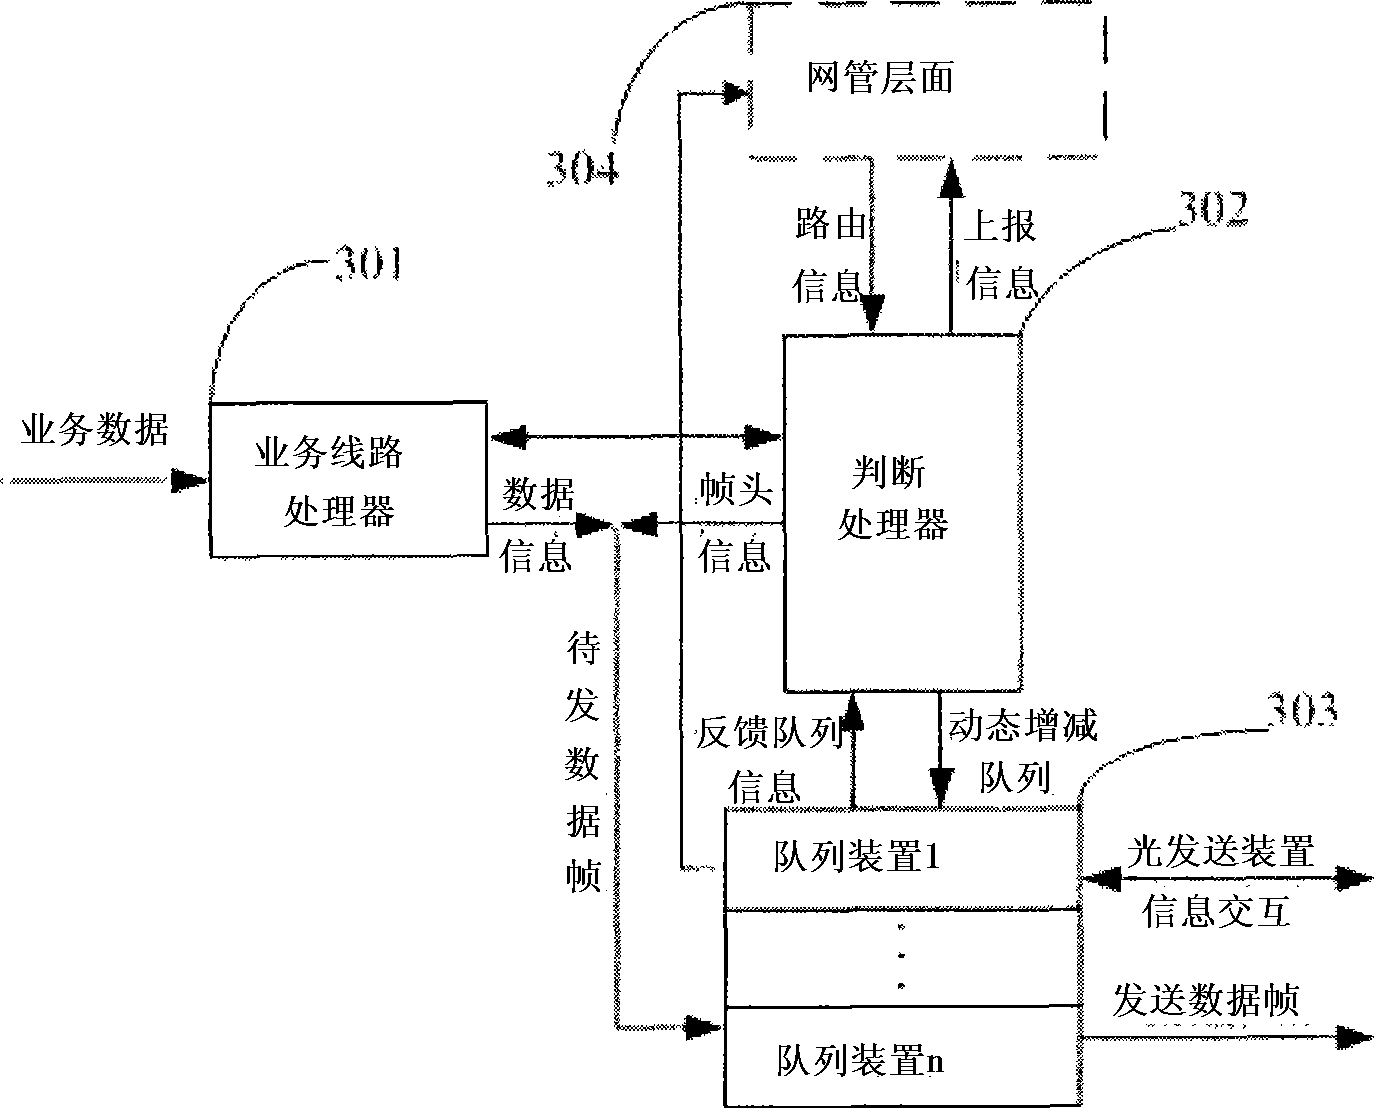 Implementation method for T-MPLS optical transmission network multi-service node